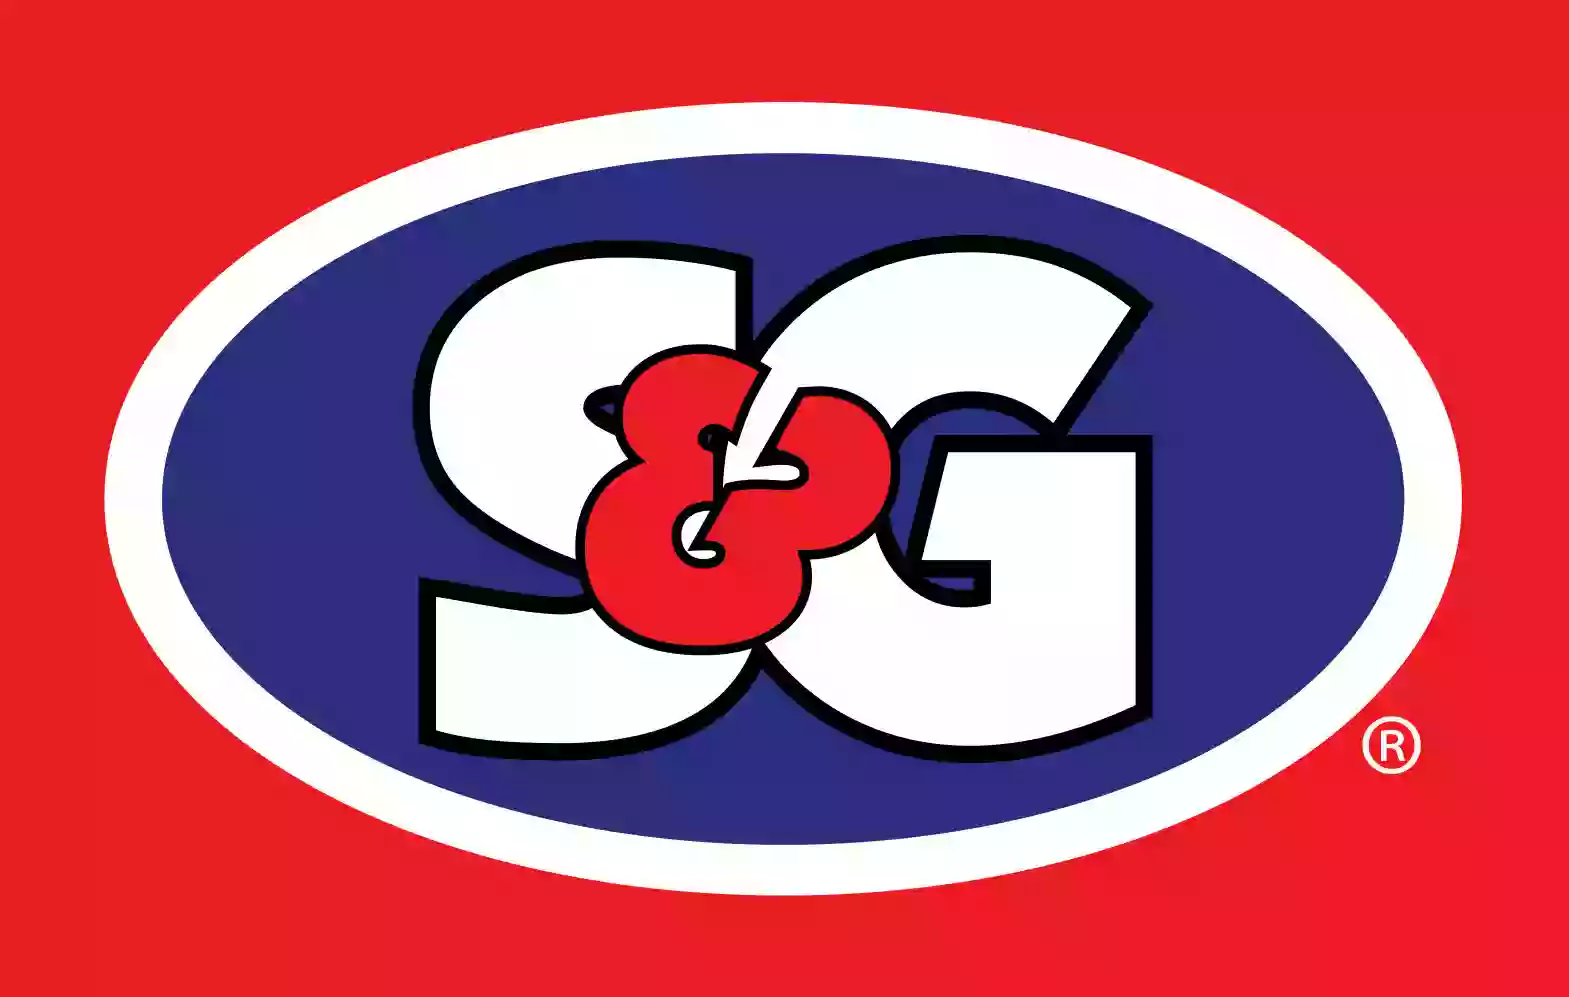 S&G #67